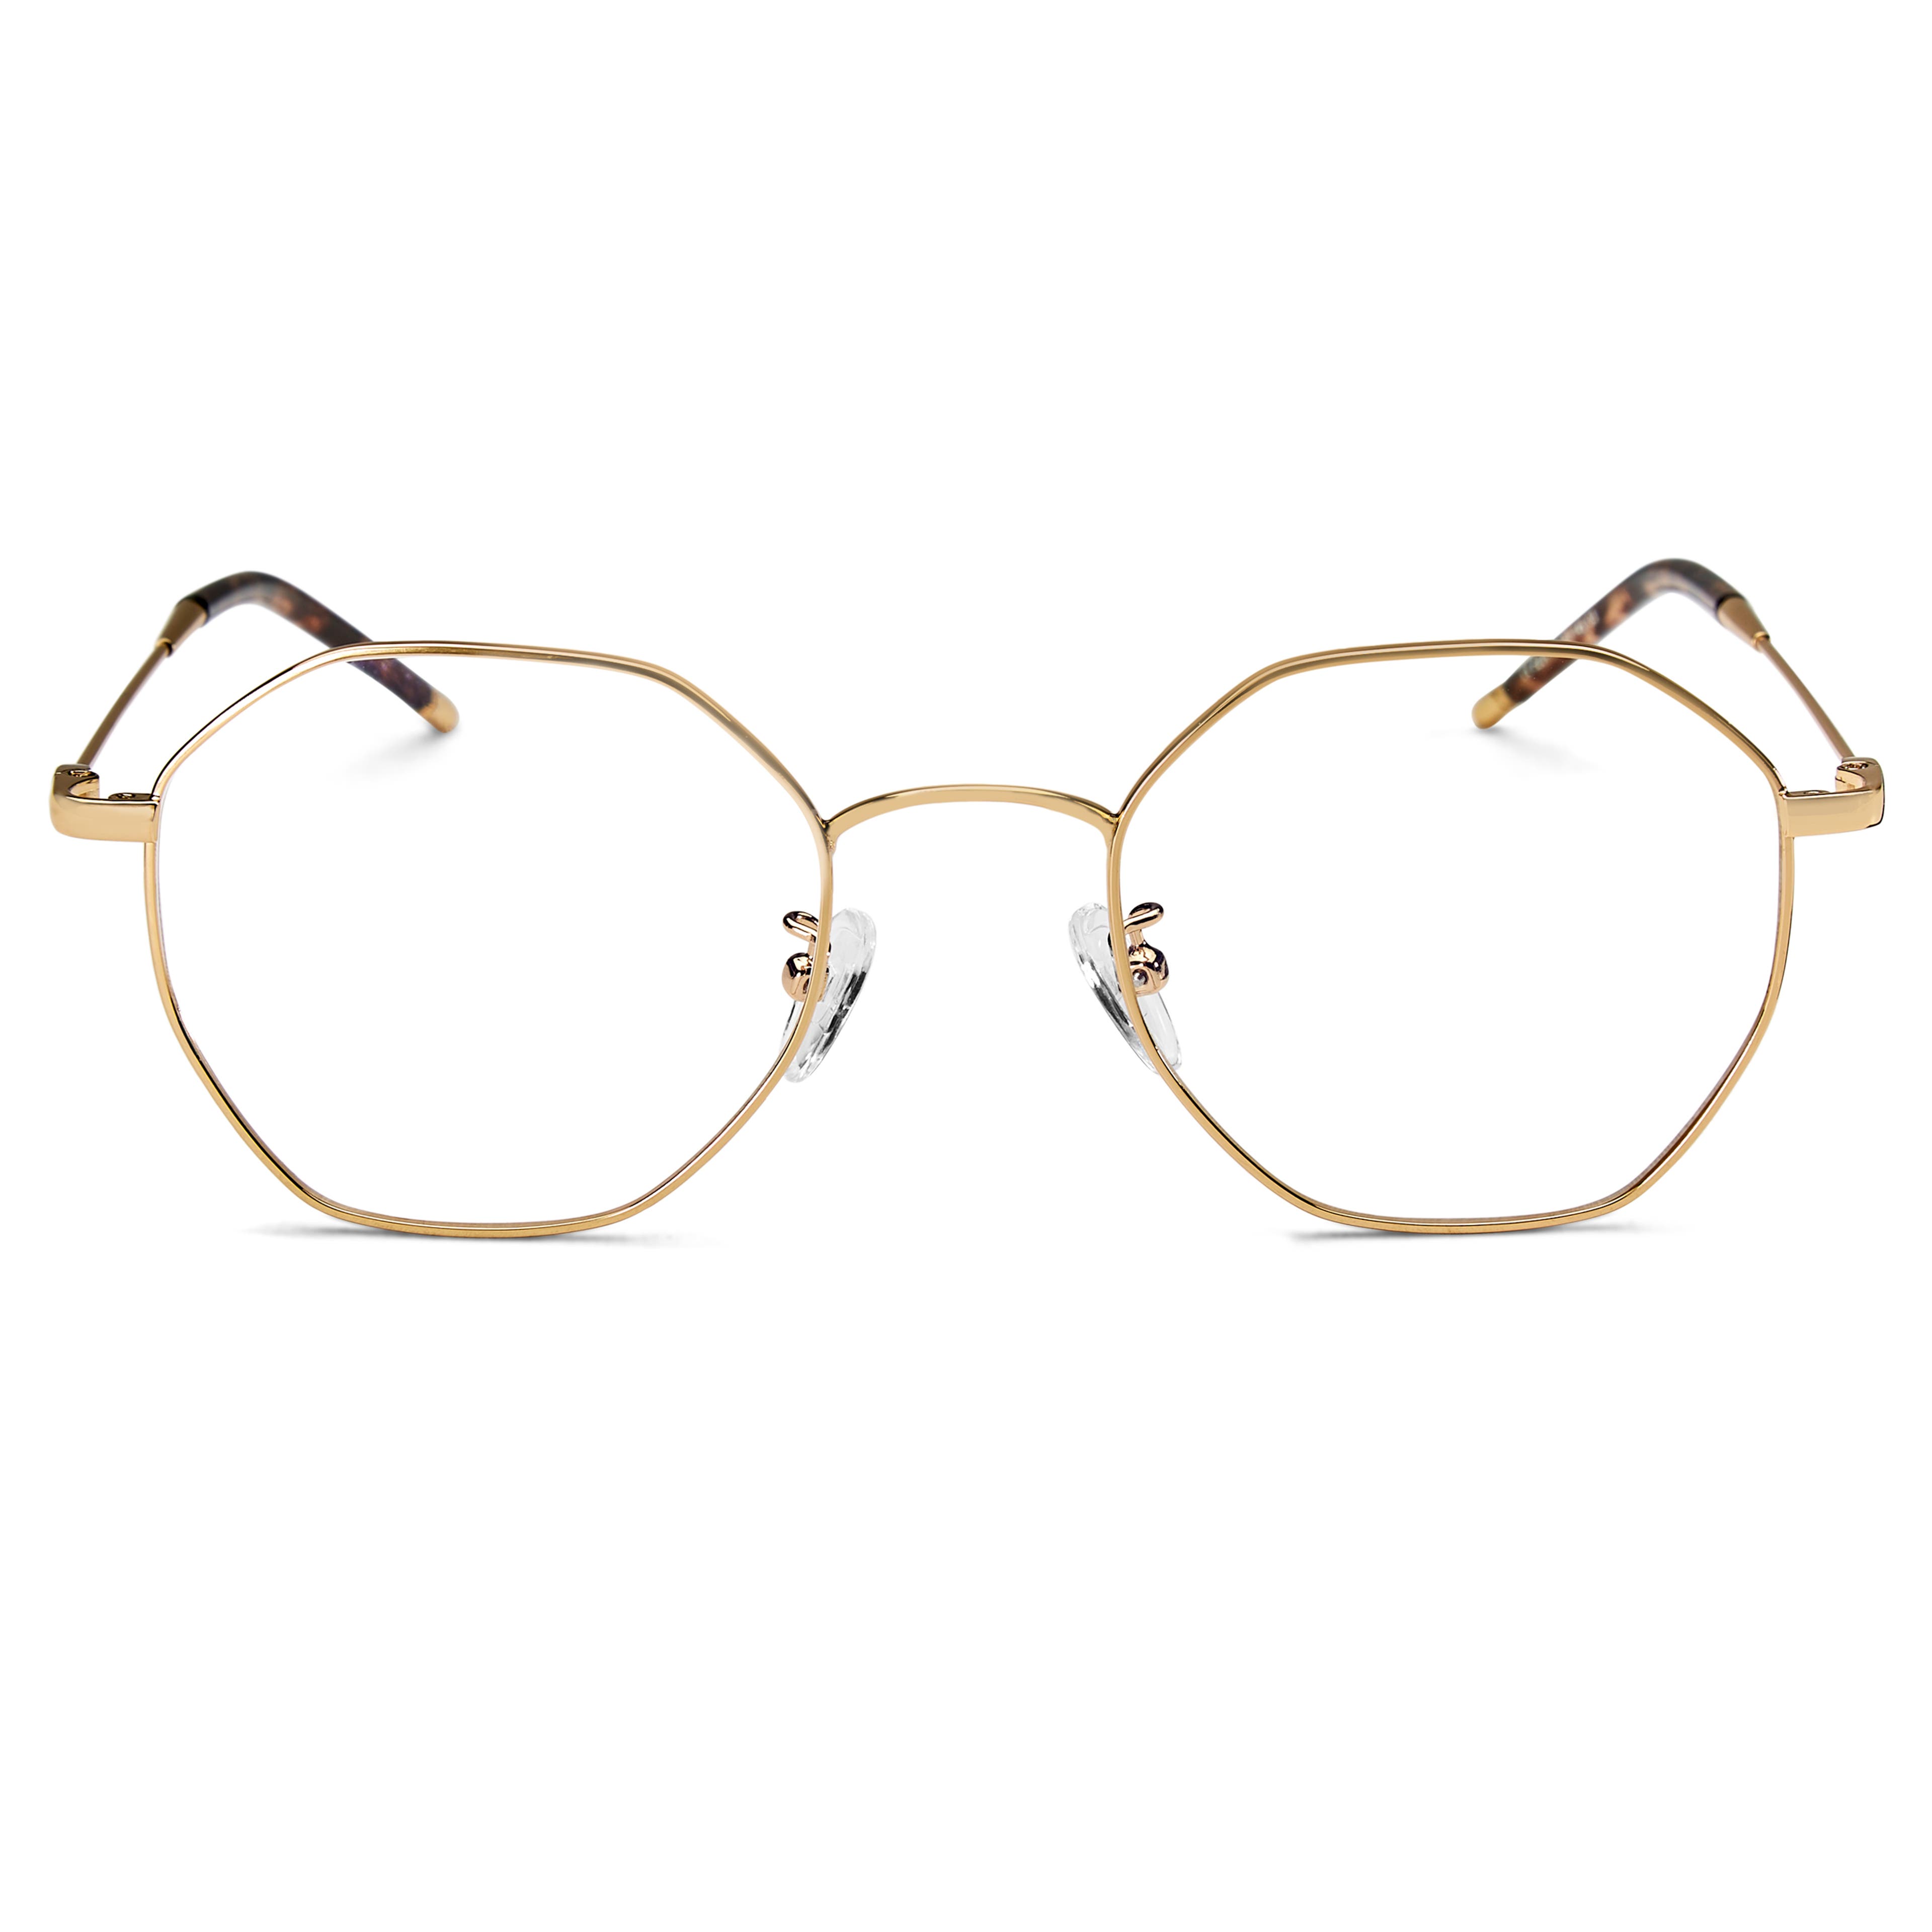 Executive Gold-Tone Glasses